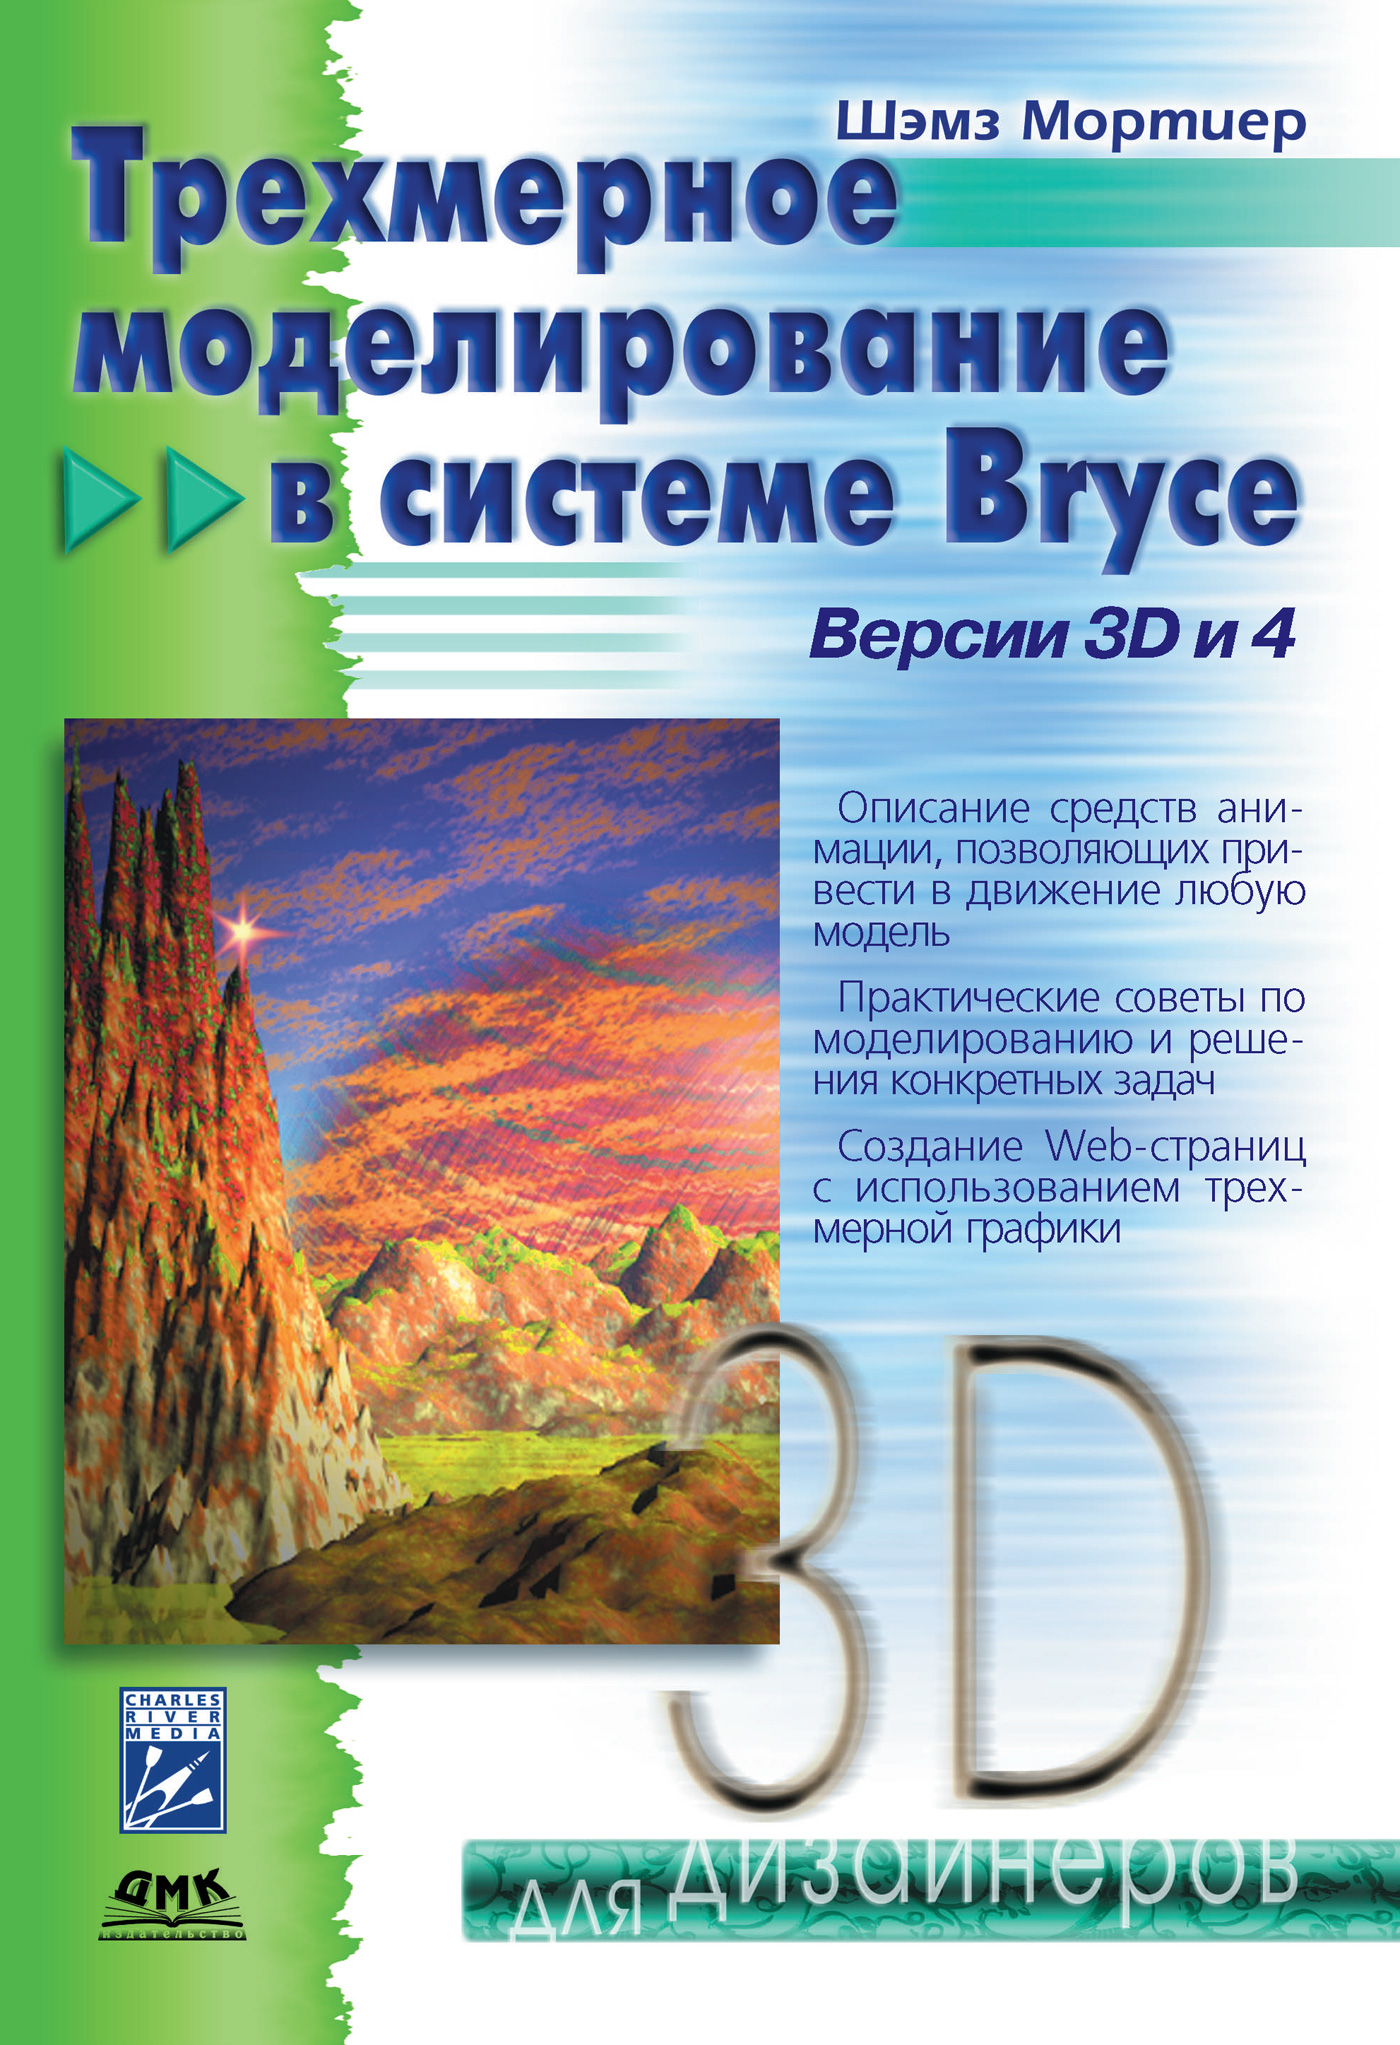 Книга  Трехмерное моделирование в системе Bryce созданная Шэмз Мортиер может относится к жанру программы, техническая литература. Стоимость электронной книги Трехмерное моделирование в системе Bryce с идентификатором 632475 составляет 279.00 руб.